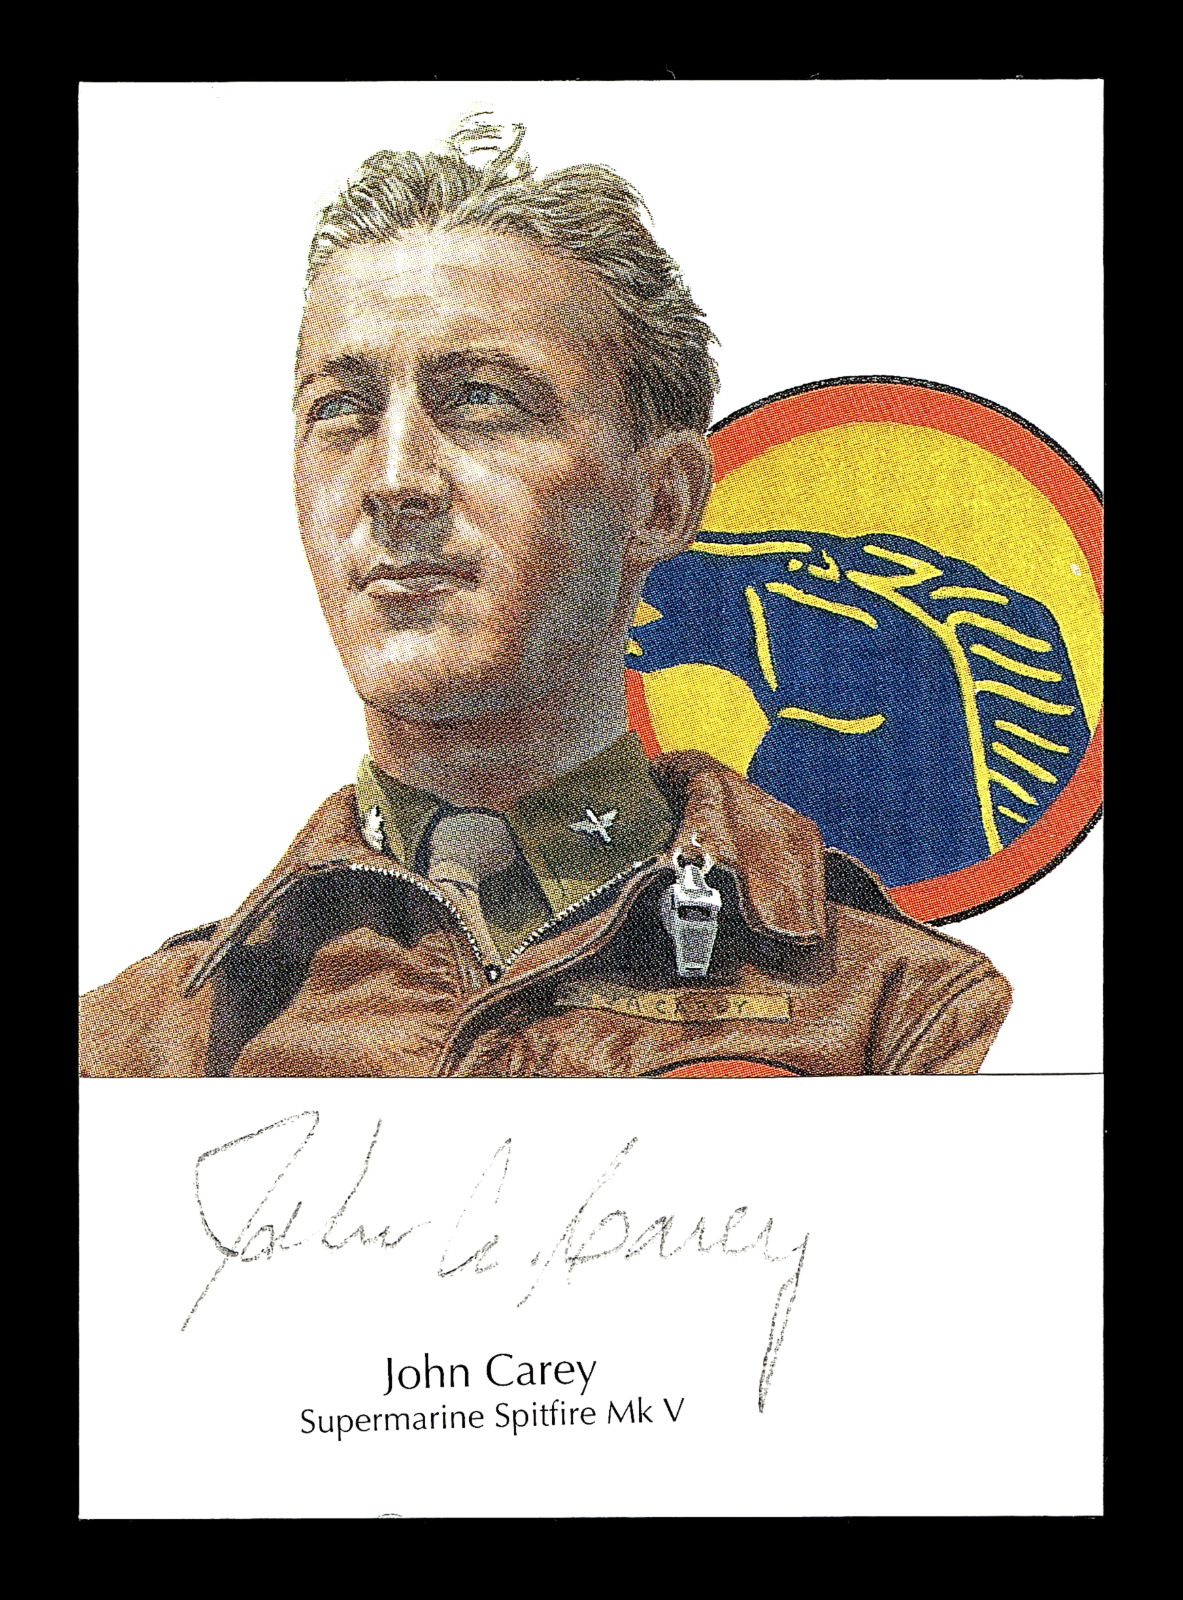 2021 Historic Autographs End Of The War 1945 John Carey World War II Pilot